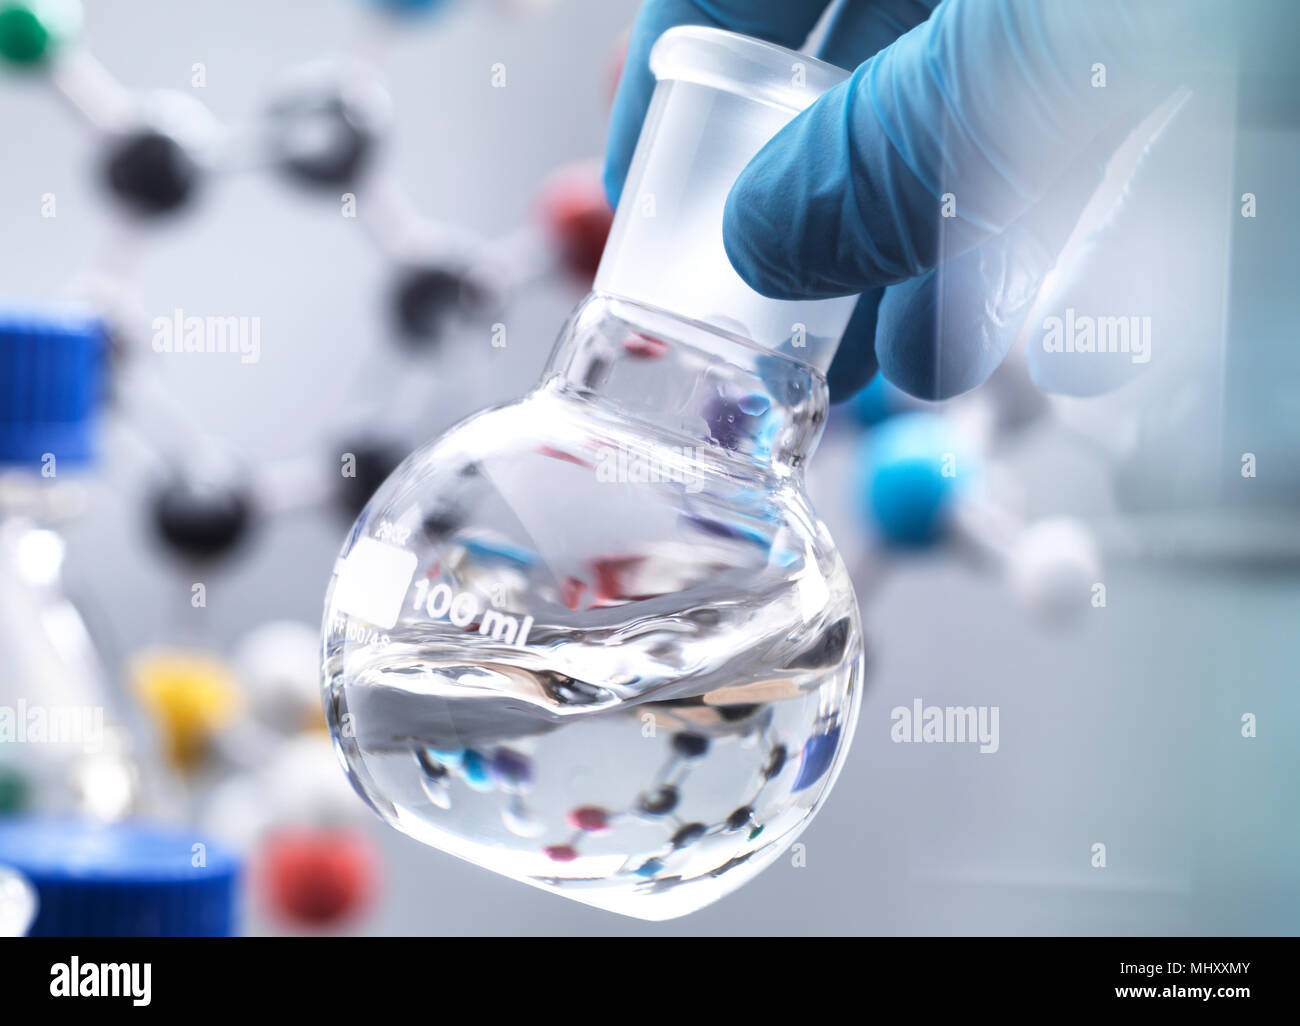 Wissenschaftler Vorbereitung chemische Formel in einem Labor Kolben während eines Experimentes, molekulare Modell im Hintergrund Stockfoto